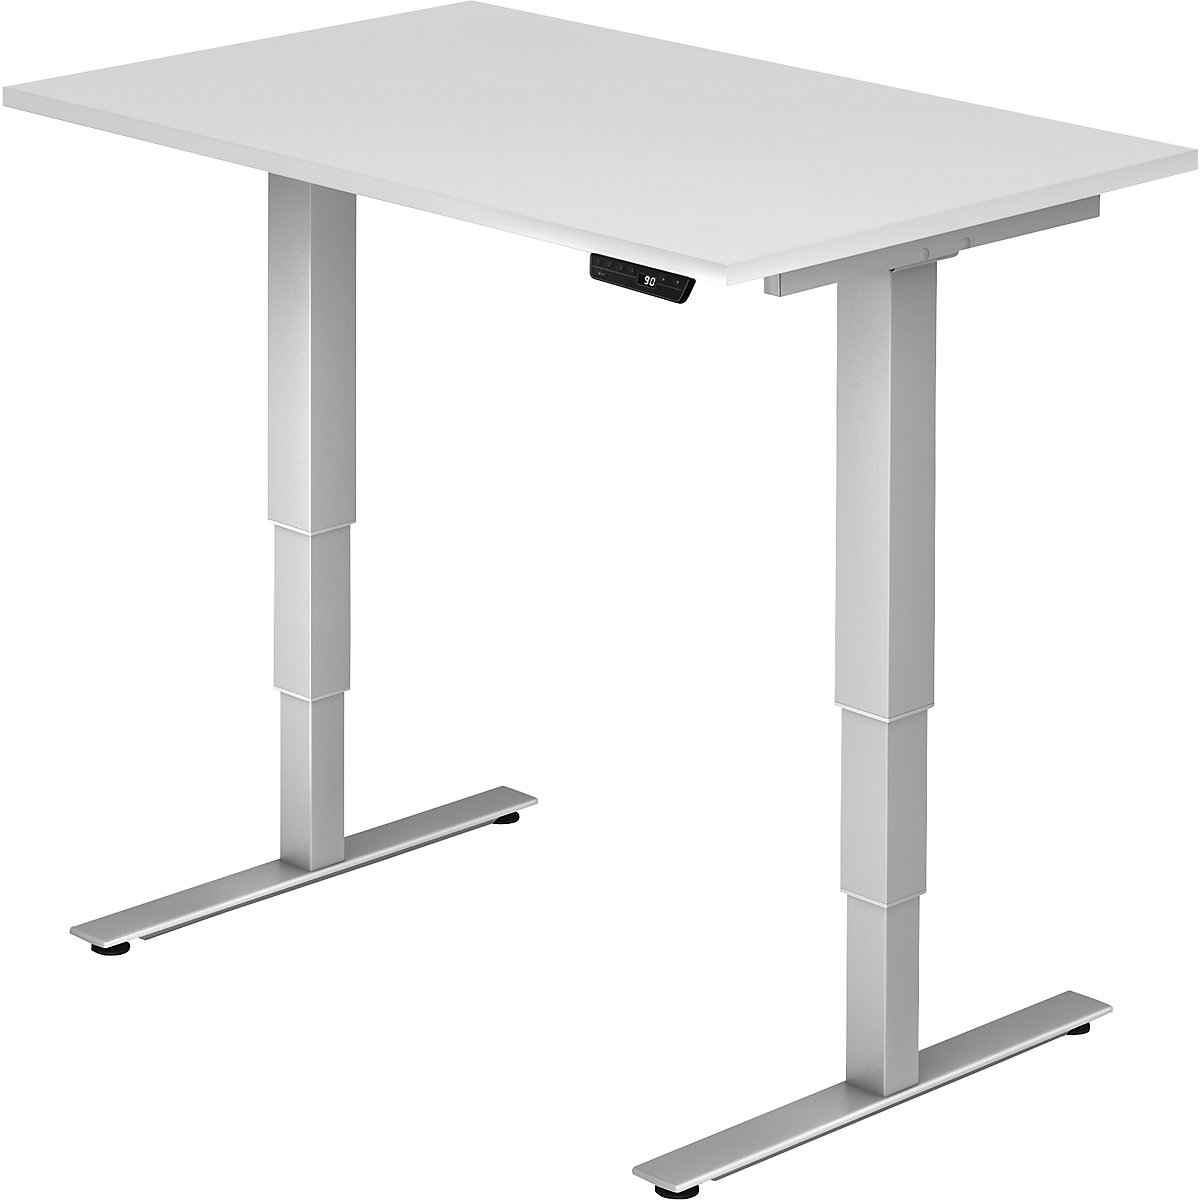 UPLINER-2.0 Stôl na písanie v stoji, elektricky výškovo prestaviteľný, podstavec s nohou v tvare T, šírka 1200 mm, biela